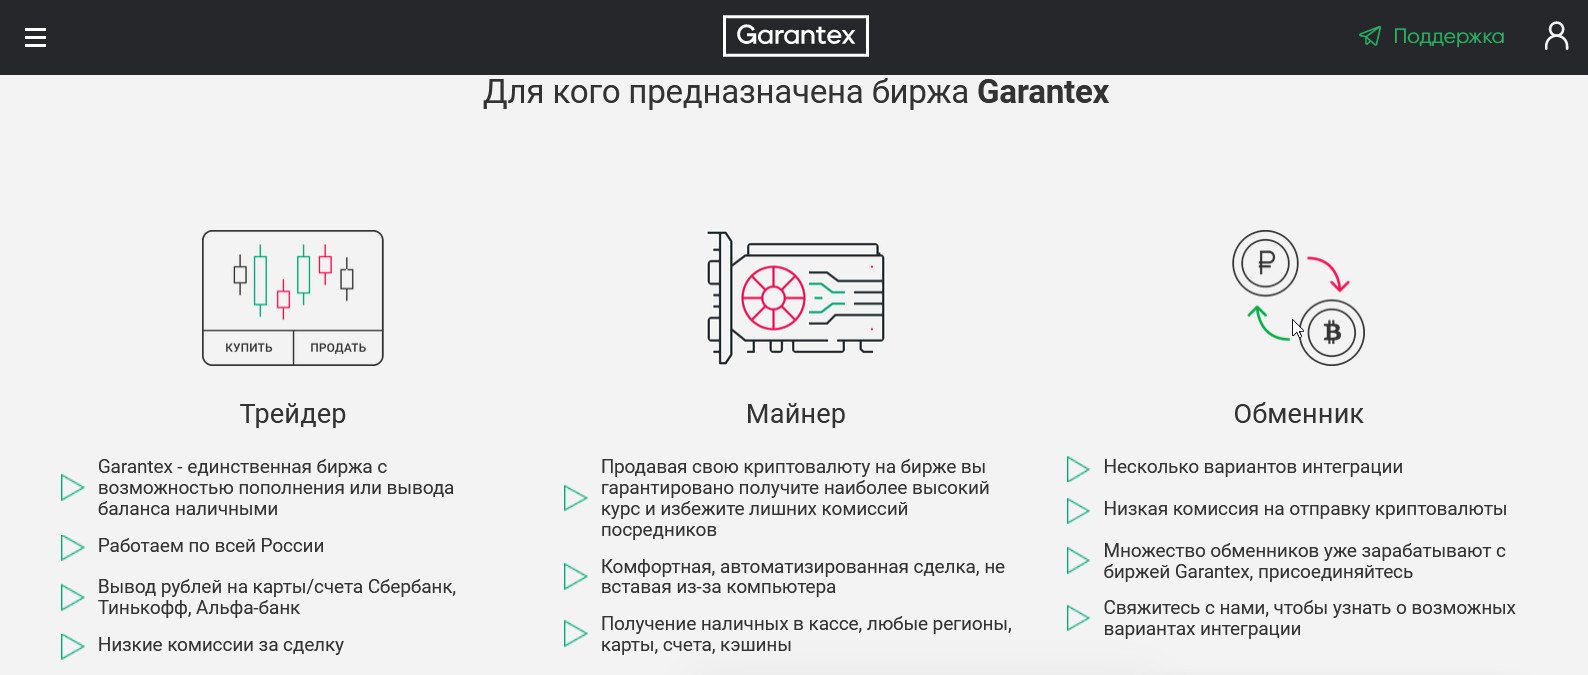 Garantex предлагает интуитивно понятный интерфейс